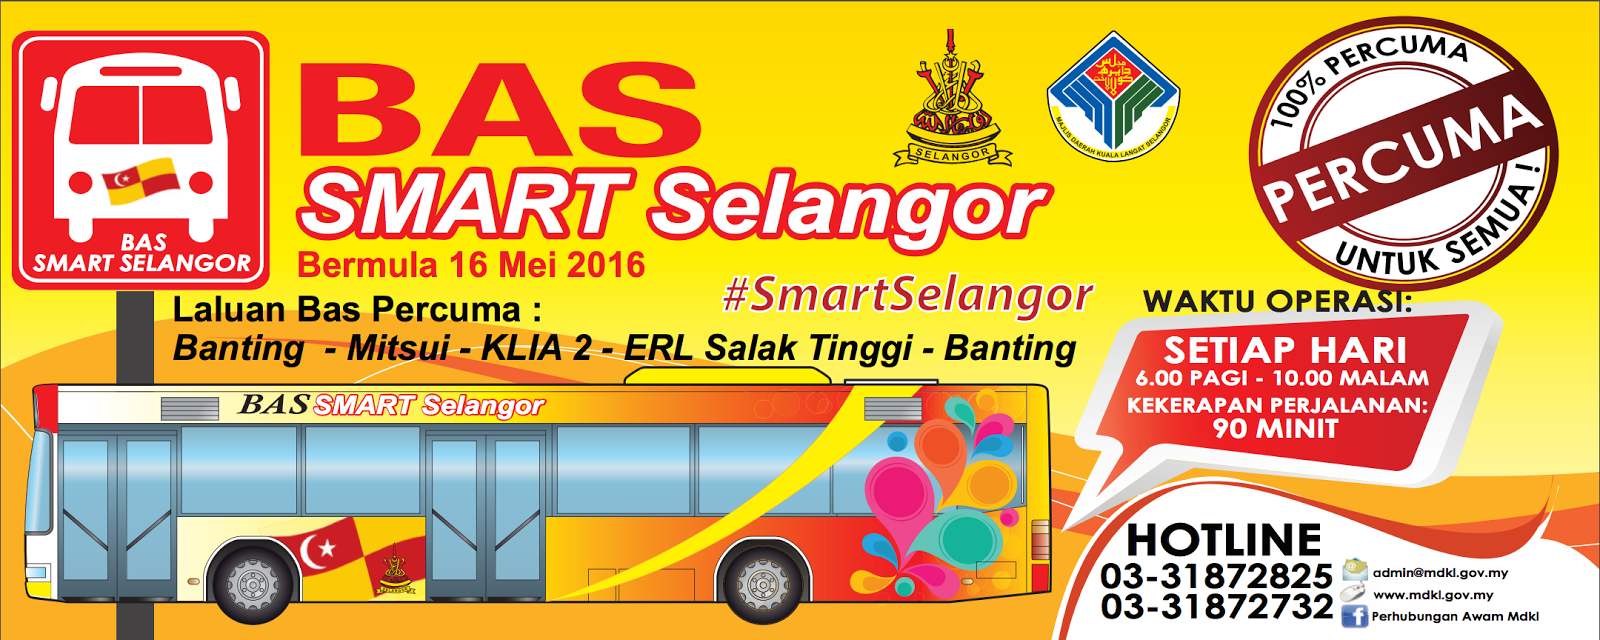 Bas Smart Selangor Percuma Banting - Mitsui - KLIA2 - ERL 